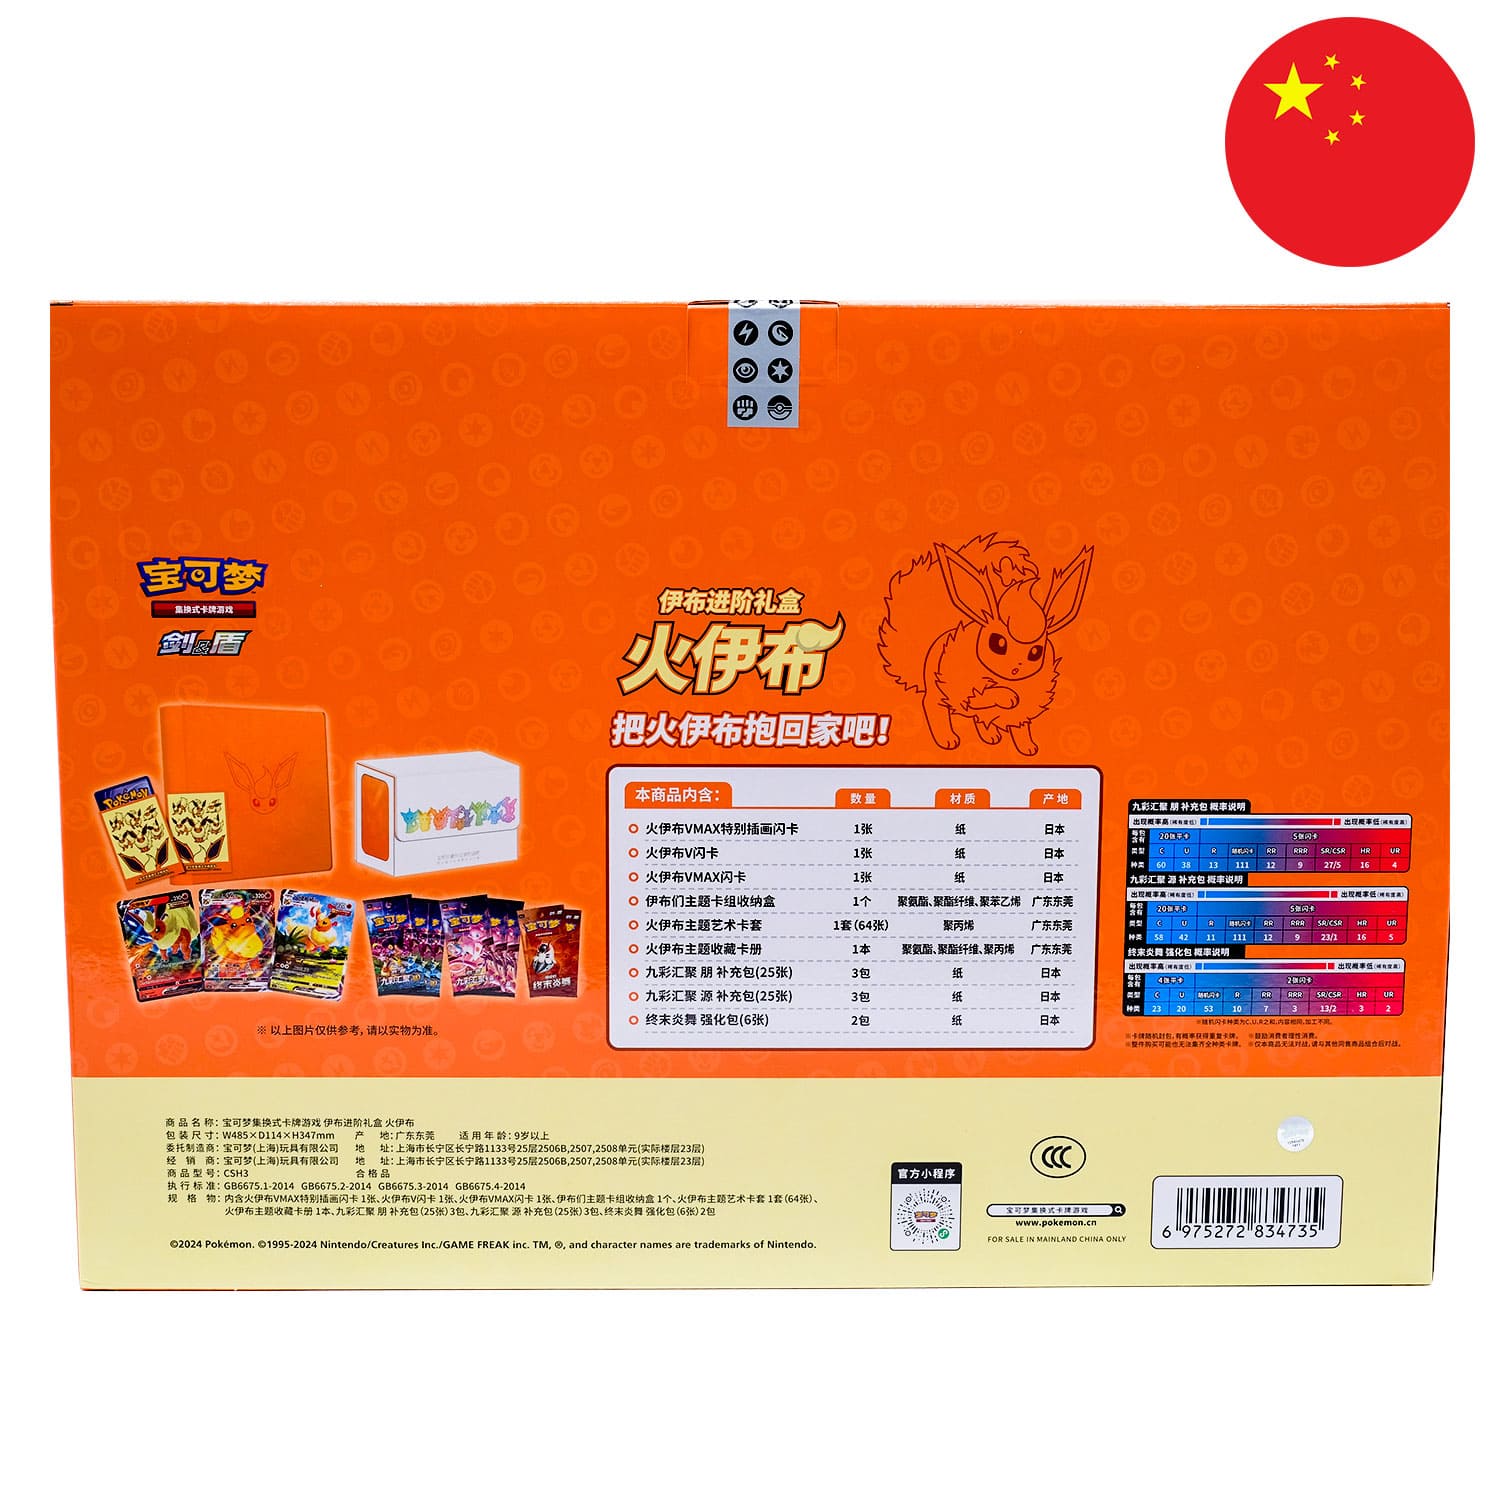 Die rote Pokemon Box im Flamara Design (CSH3), die Rückseite mit den Details, mit der Flagge Chinas in der Ecke.